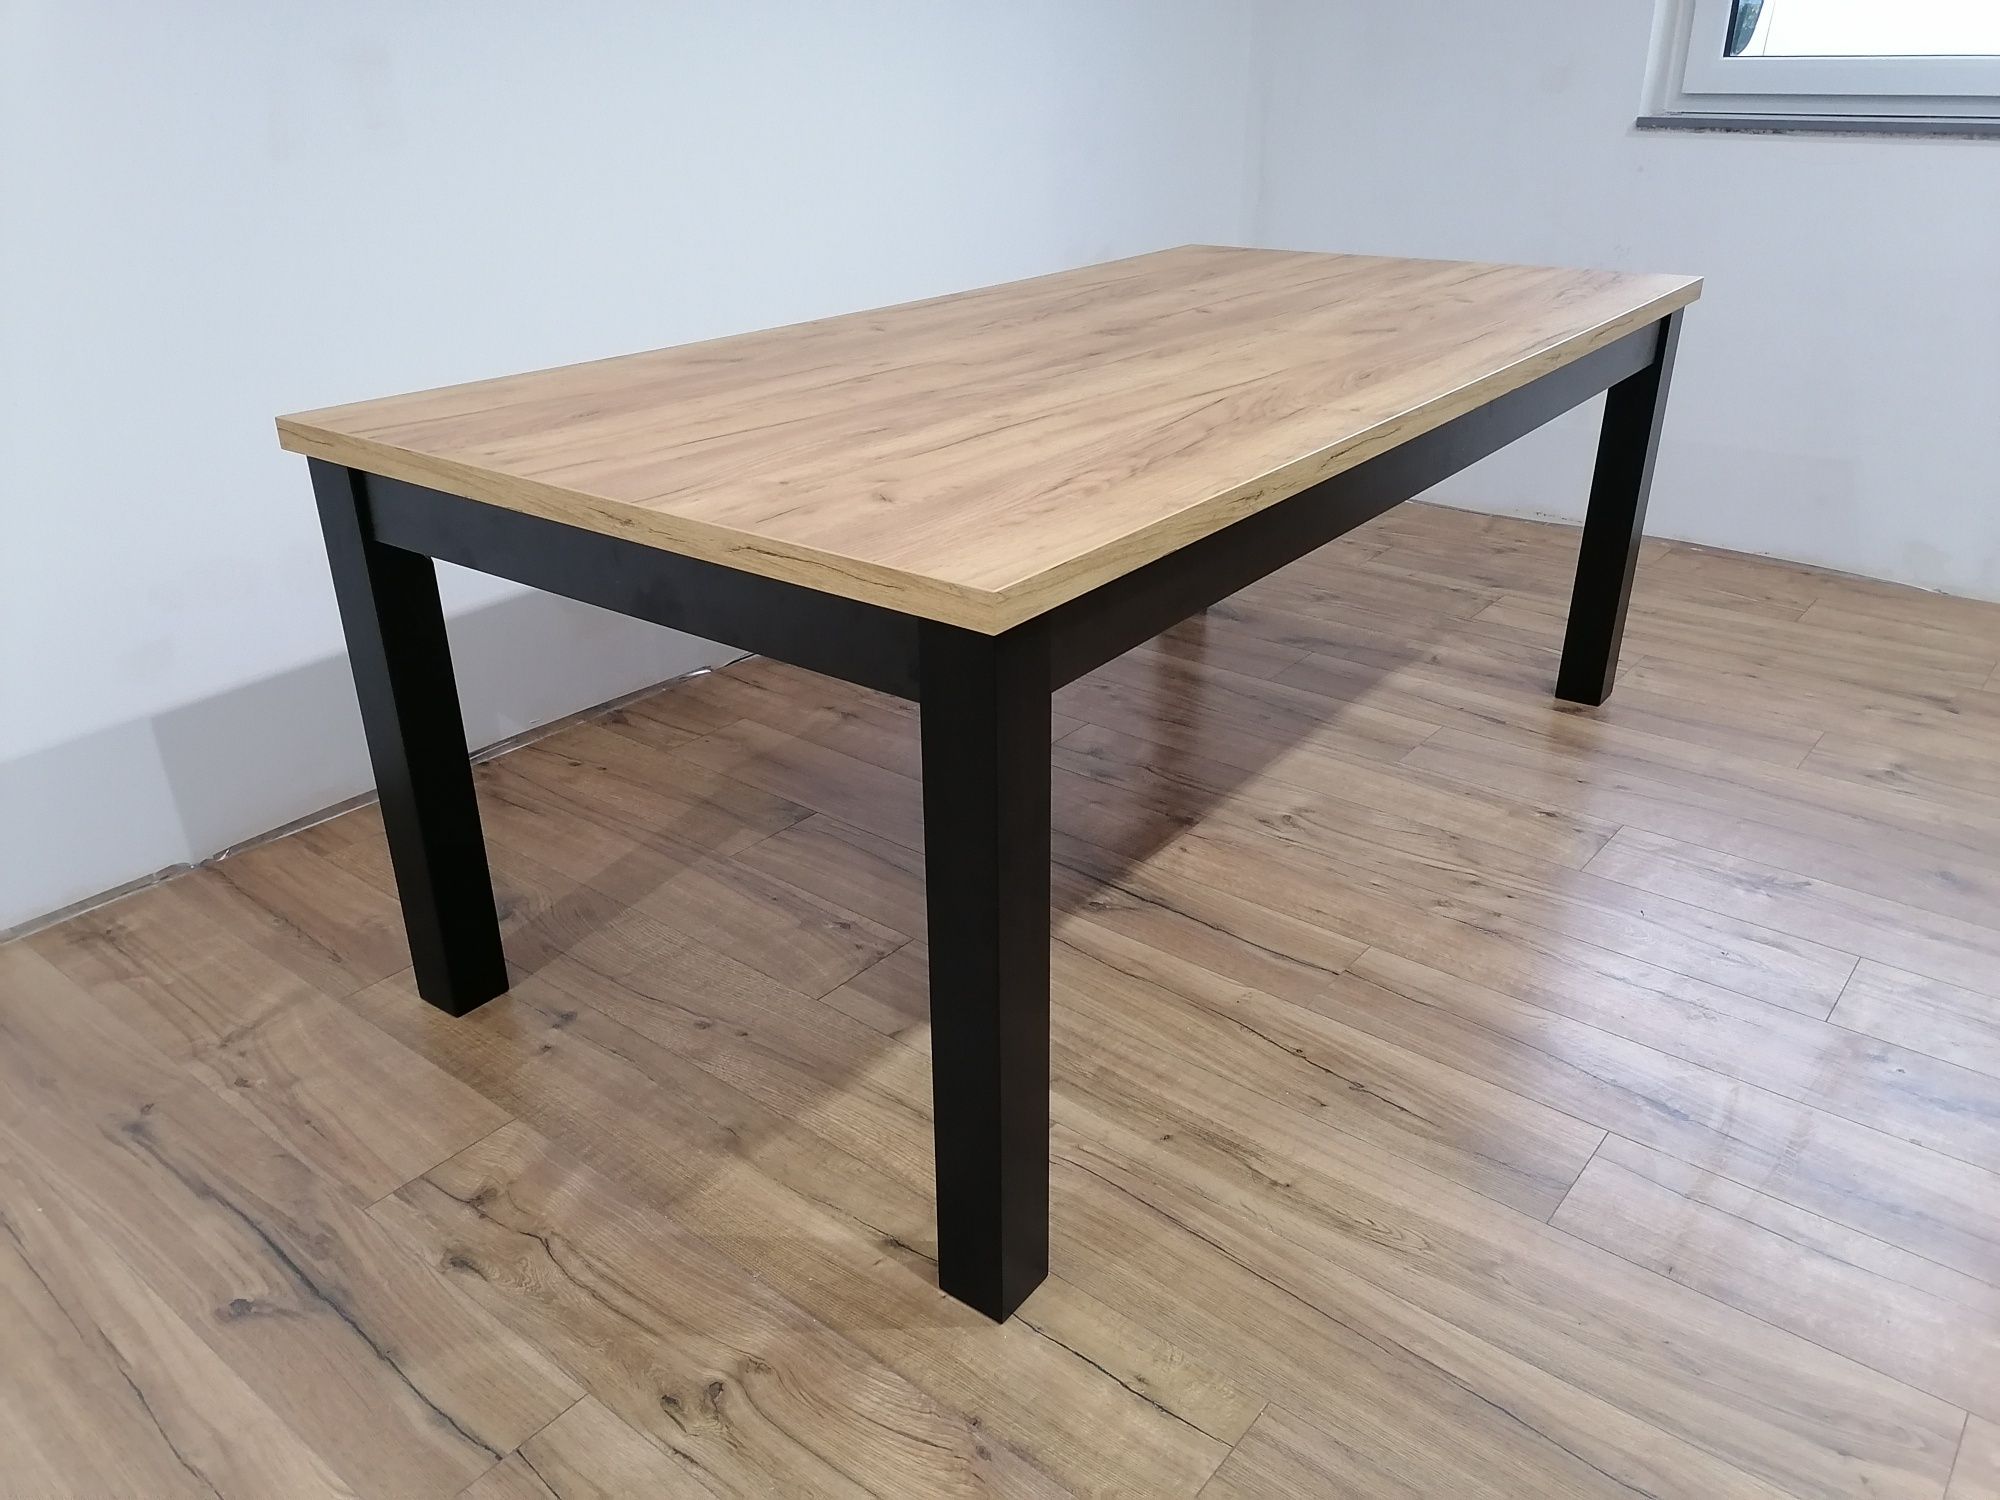 Stół klasyczny „Classic” rozkładany 160x90x220, nogi drewniane.